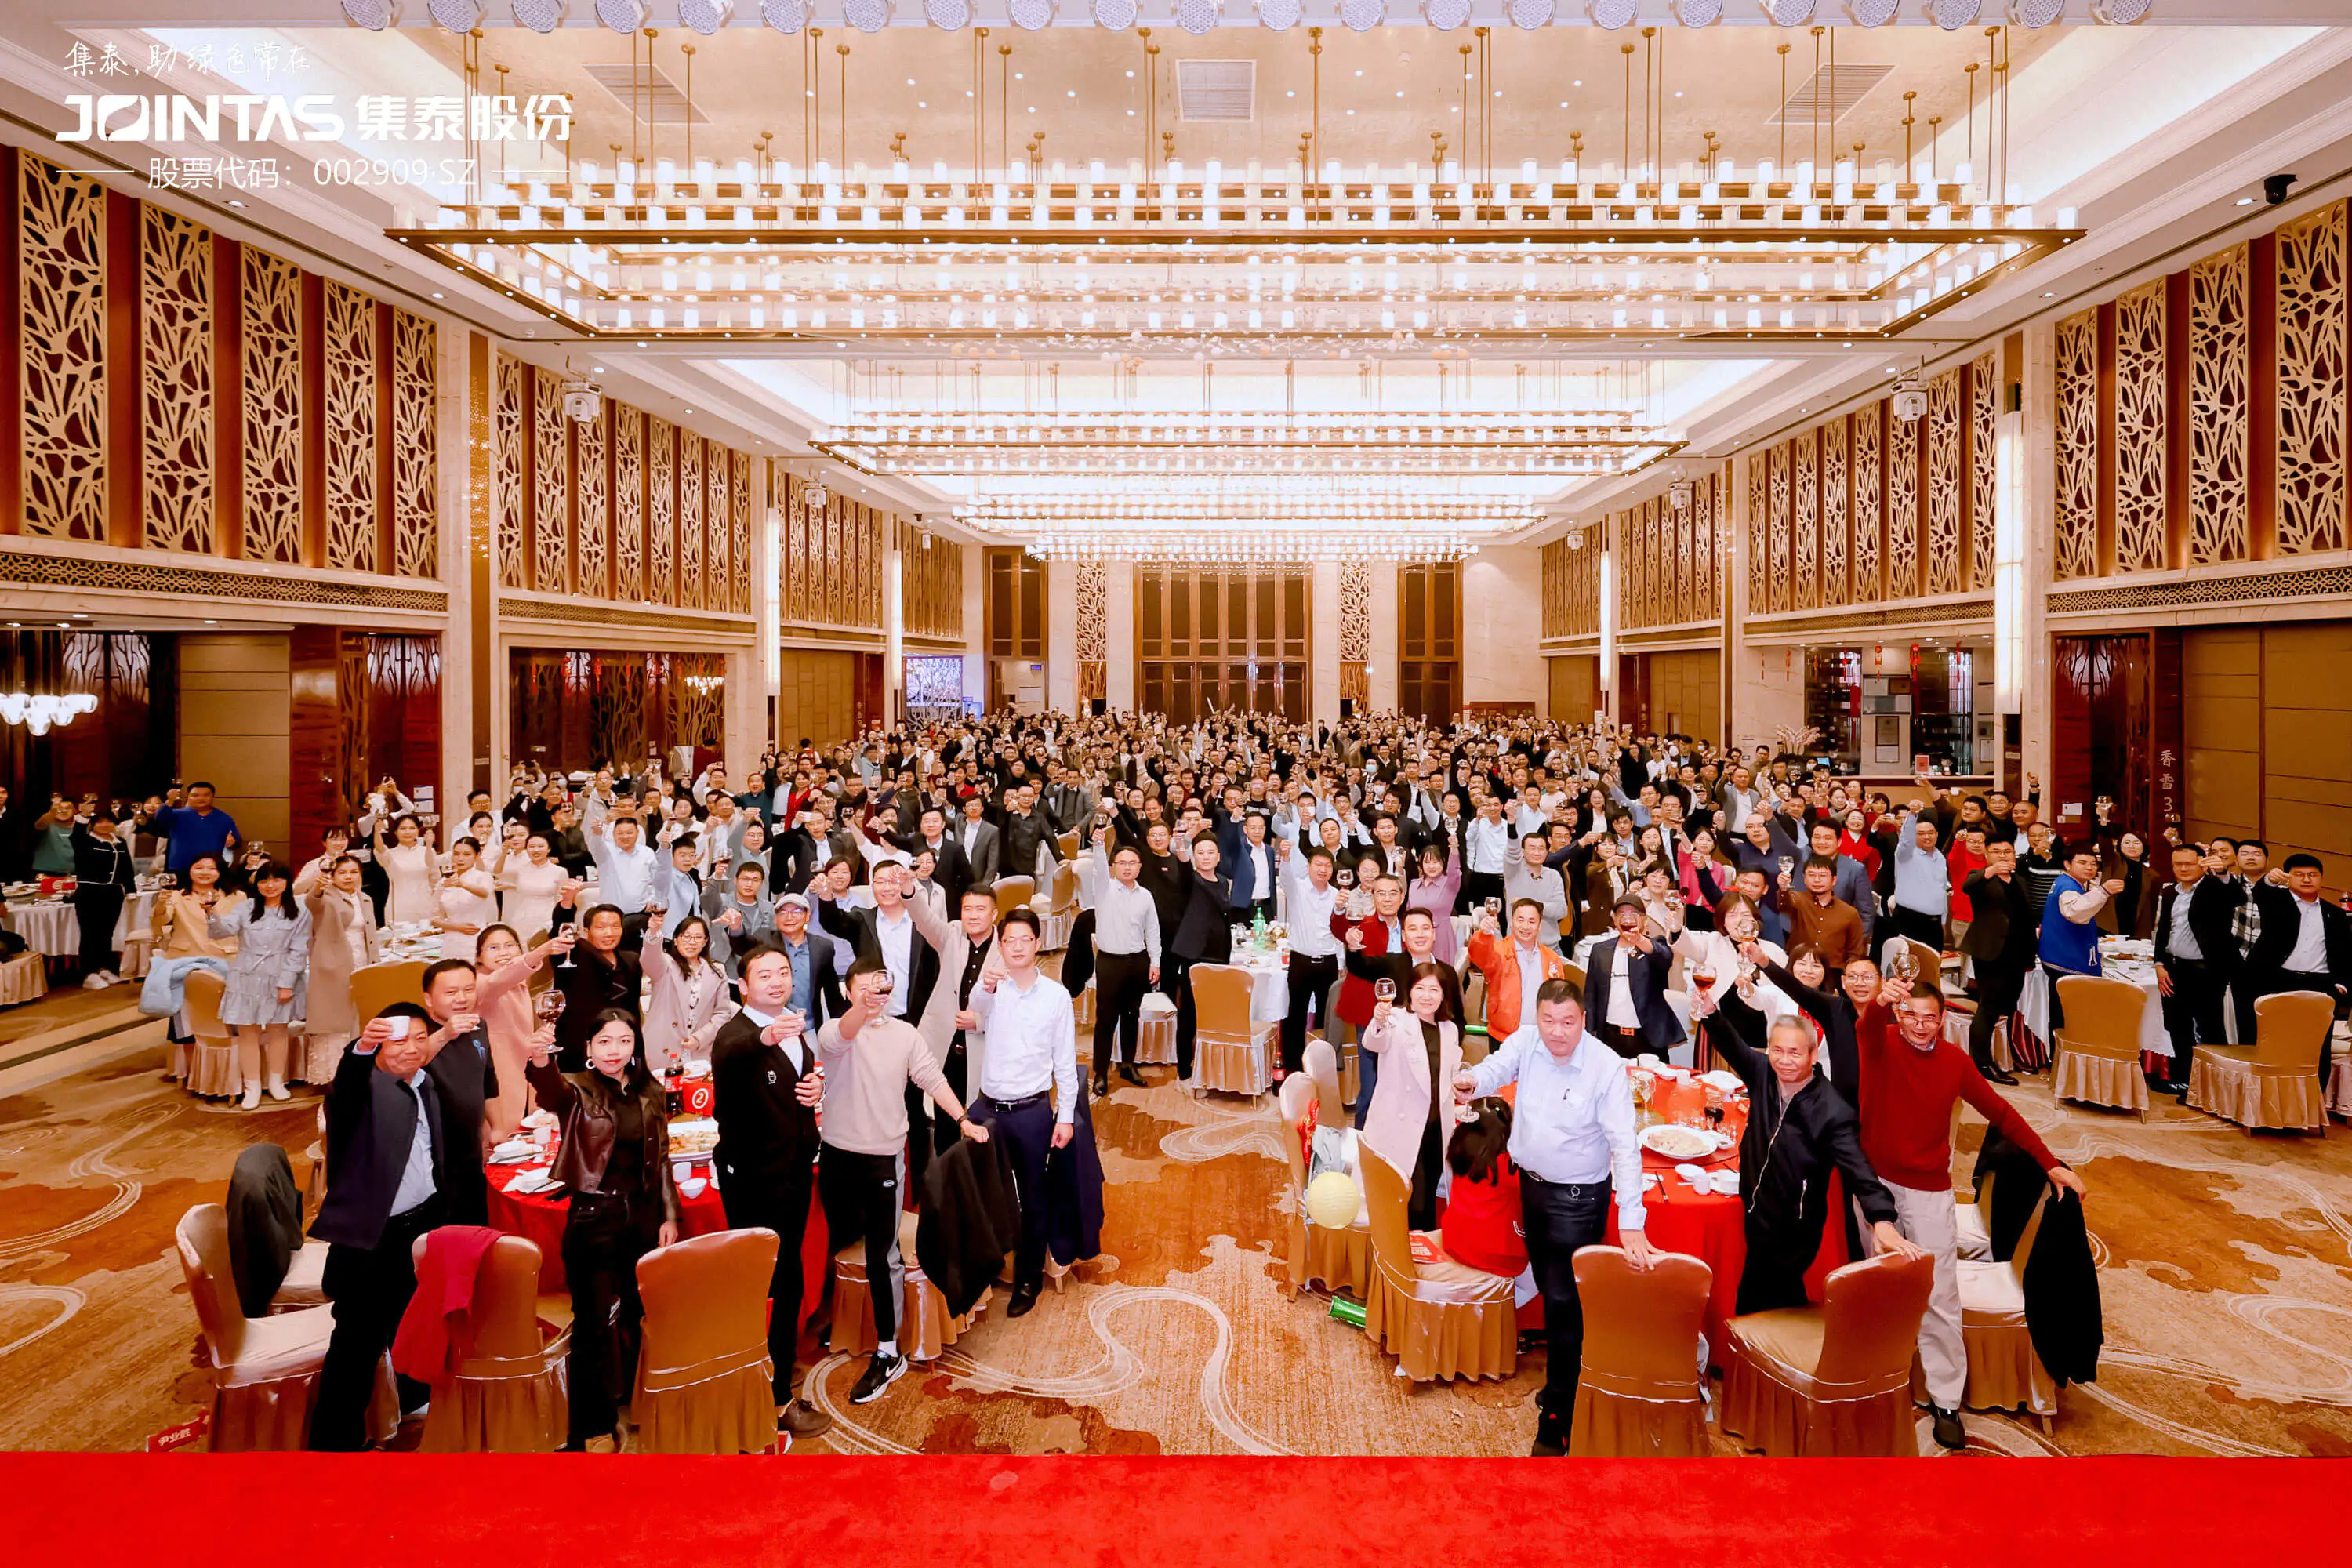 Die ausgezeichnete Belobigungskonferenz und Preisverleihung von Jointas Chemical Co., Ltd. fand großartig in Guangzhou statt!